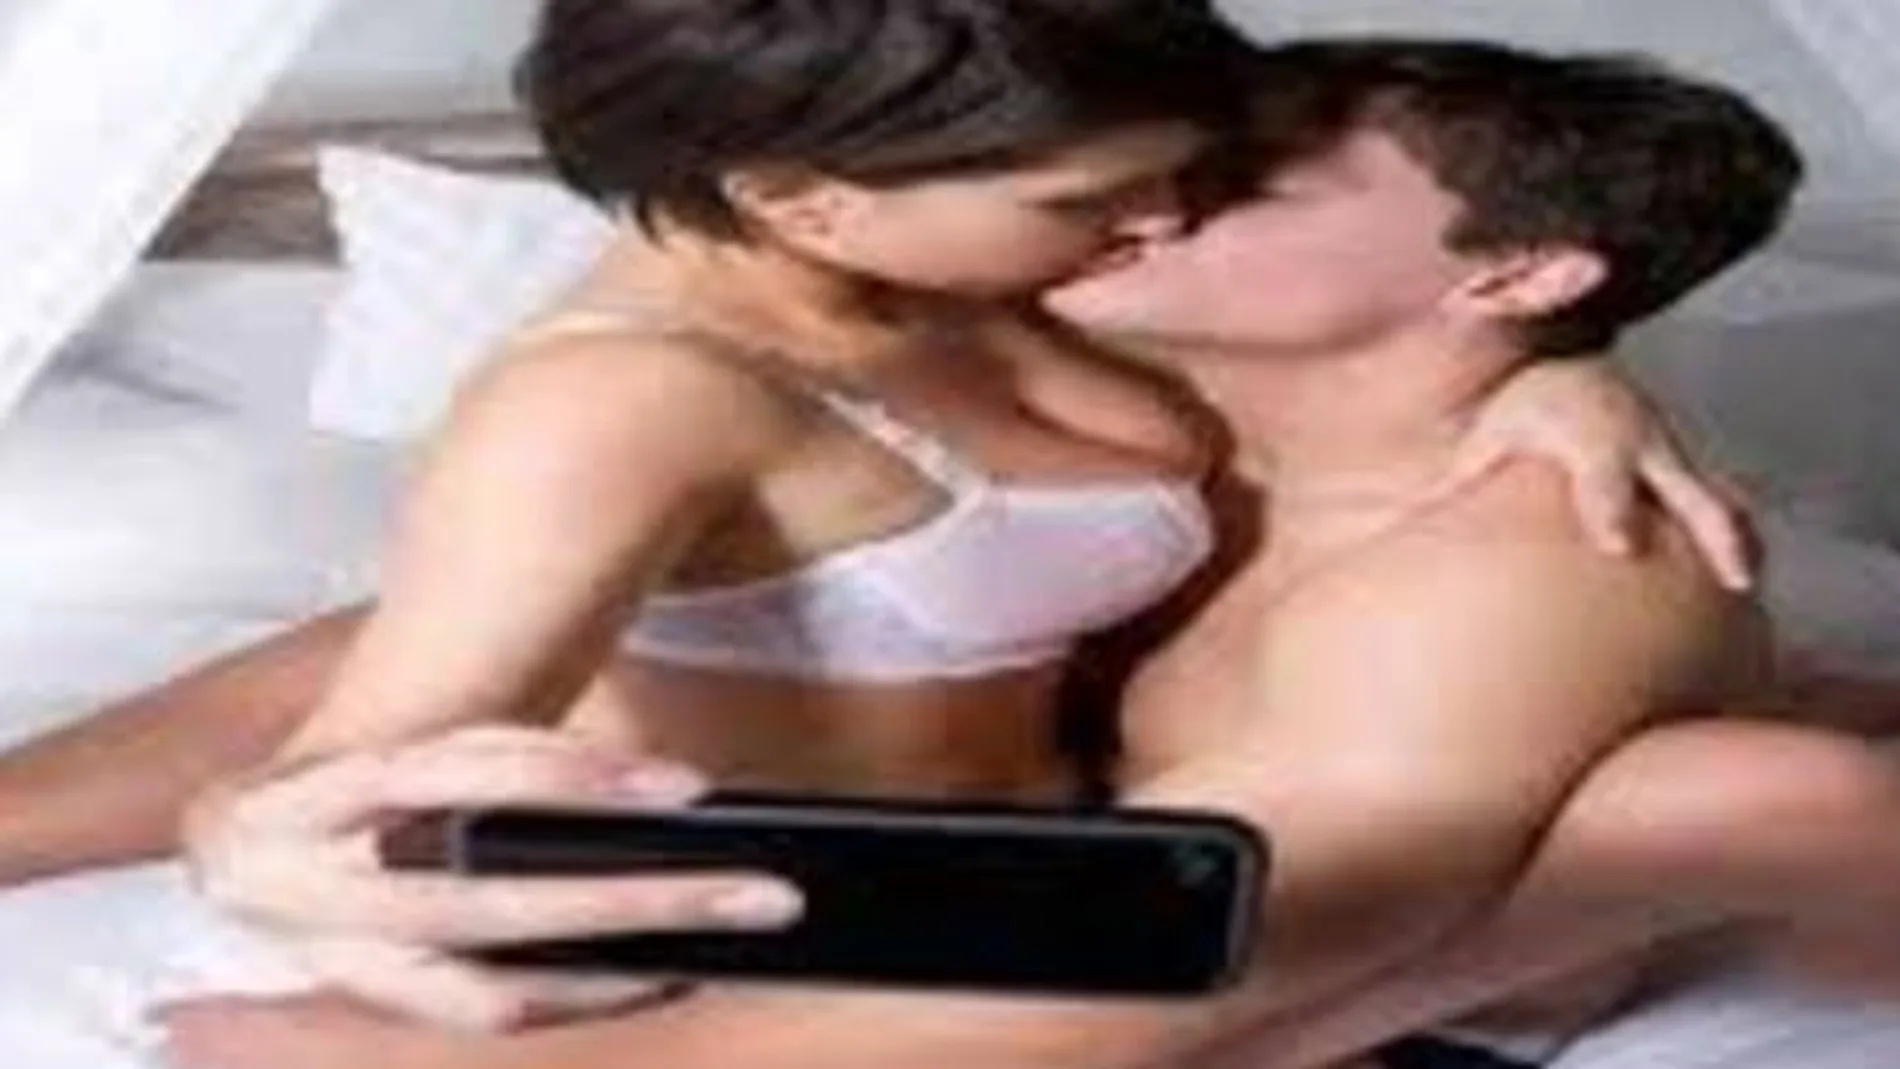 Una moda reciente es el sexselfie o selfie after sex